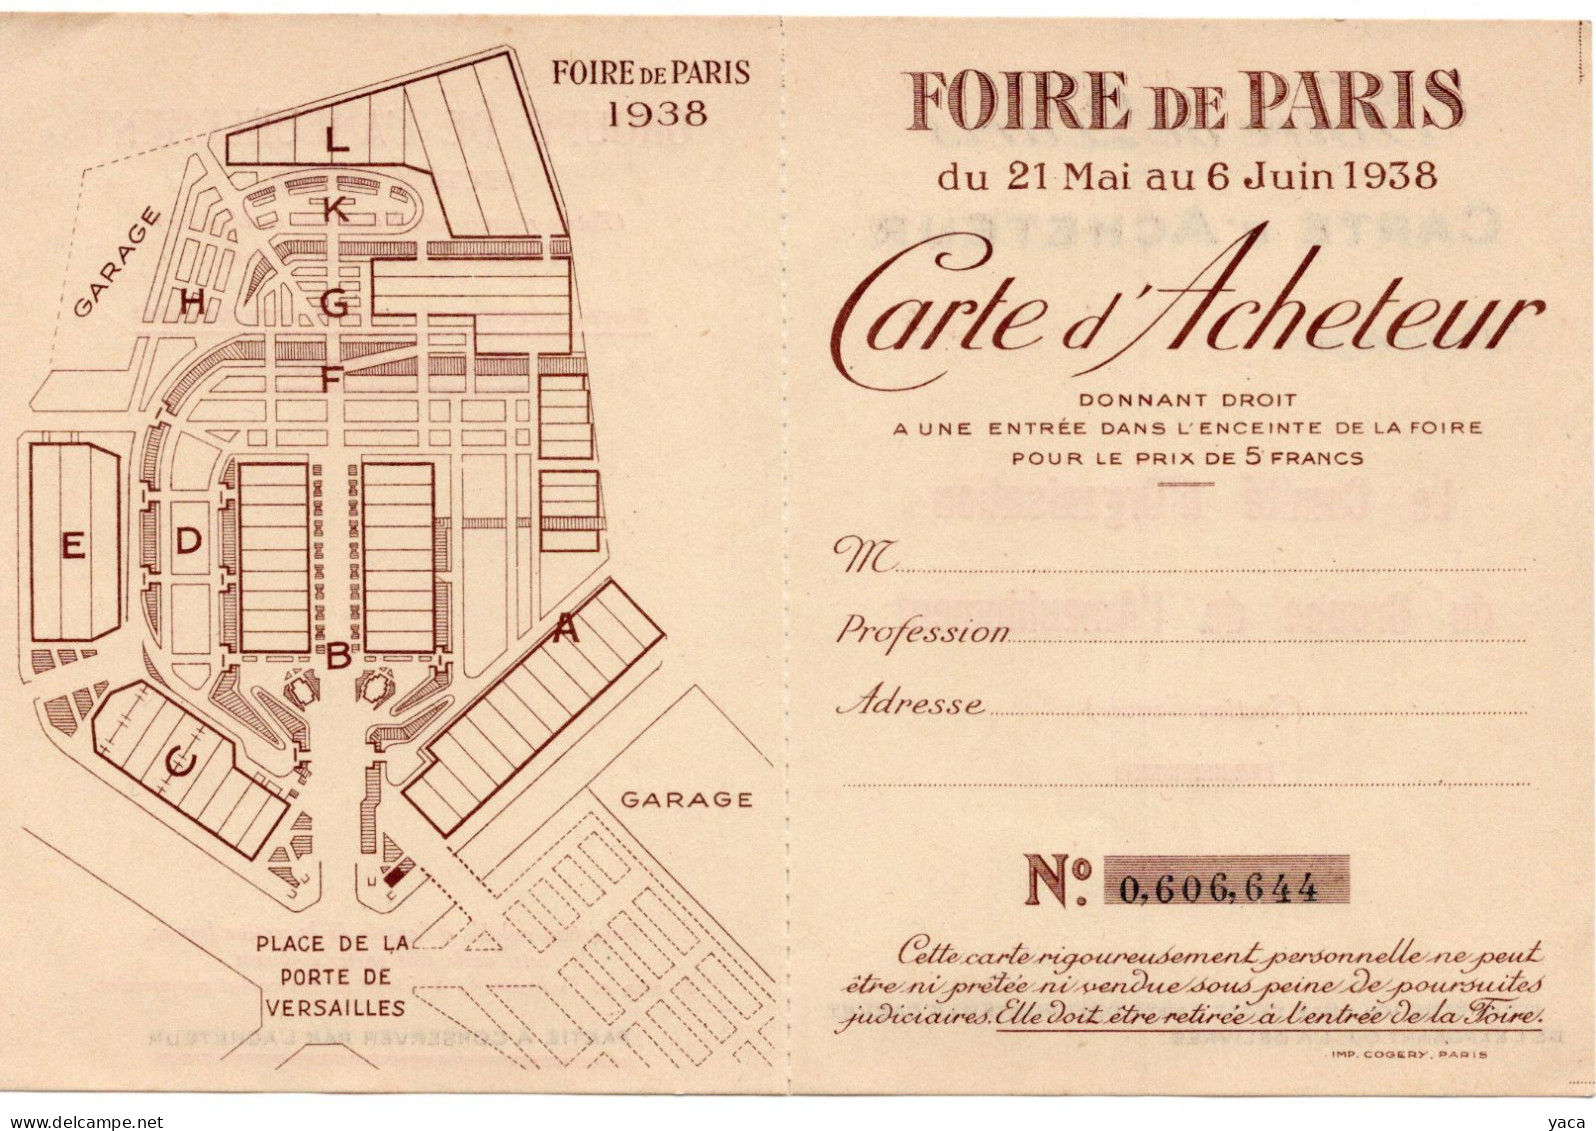 Foire De Paris 1938 - Carte Acheteur - Tickets D'entrée